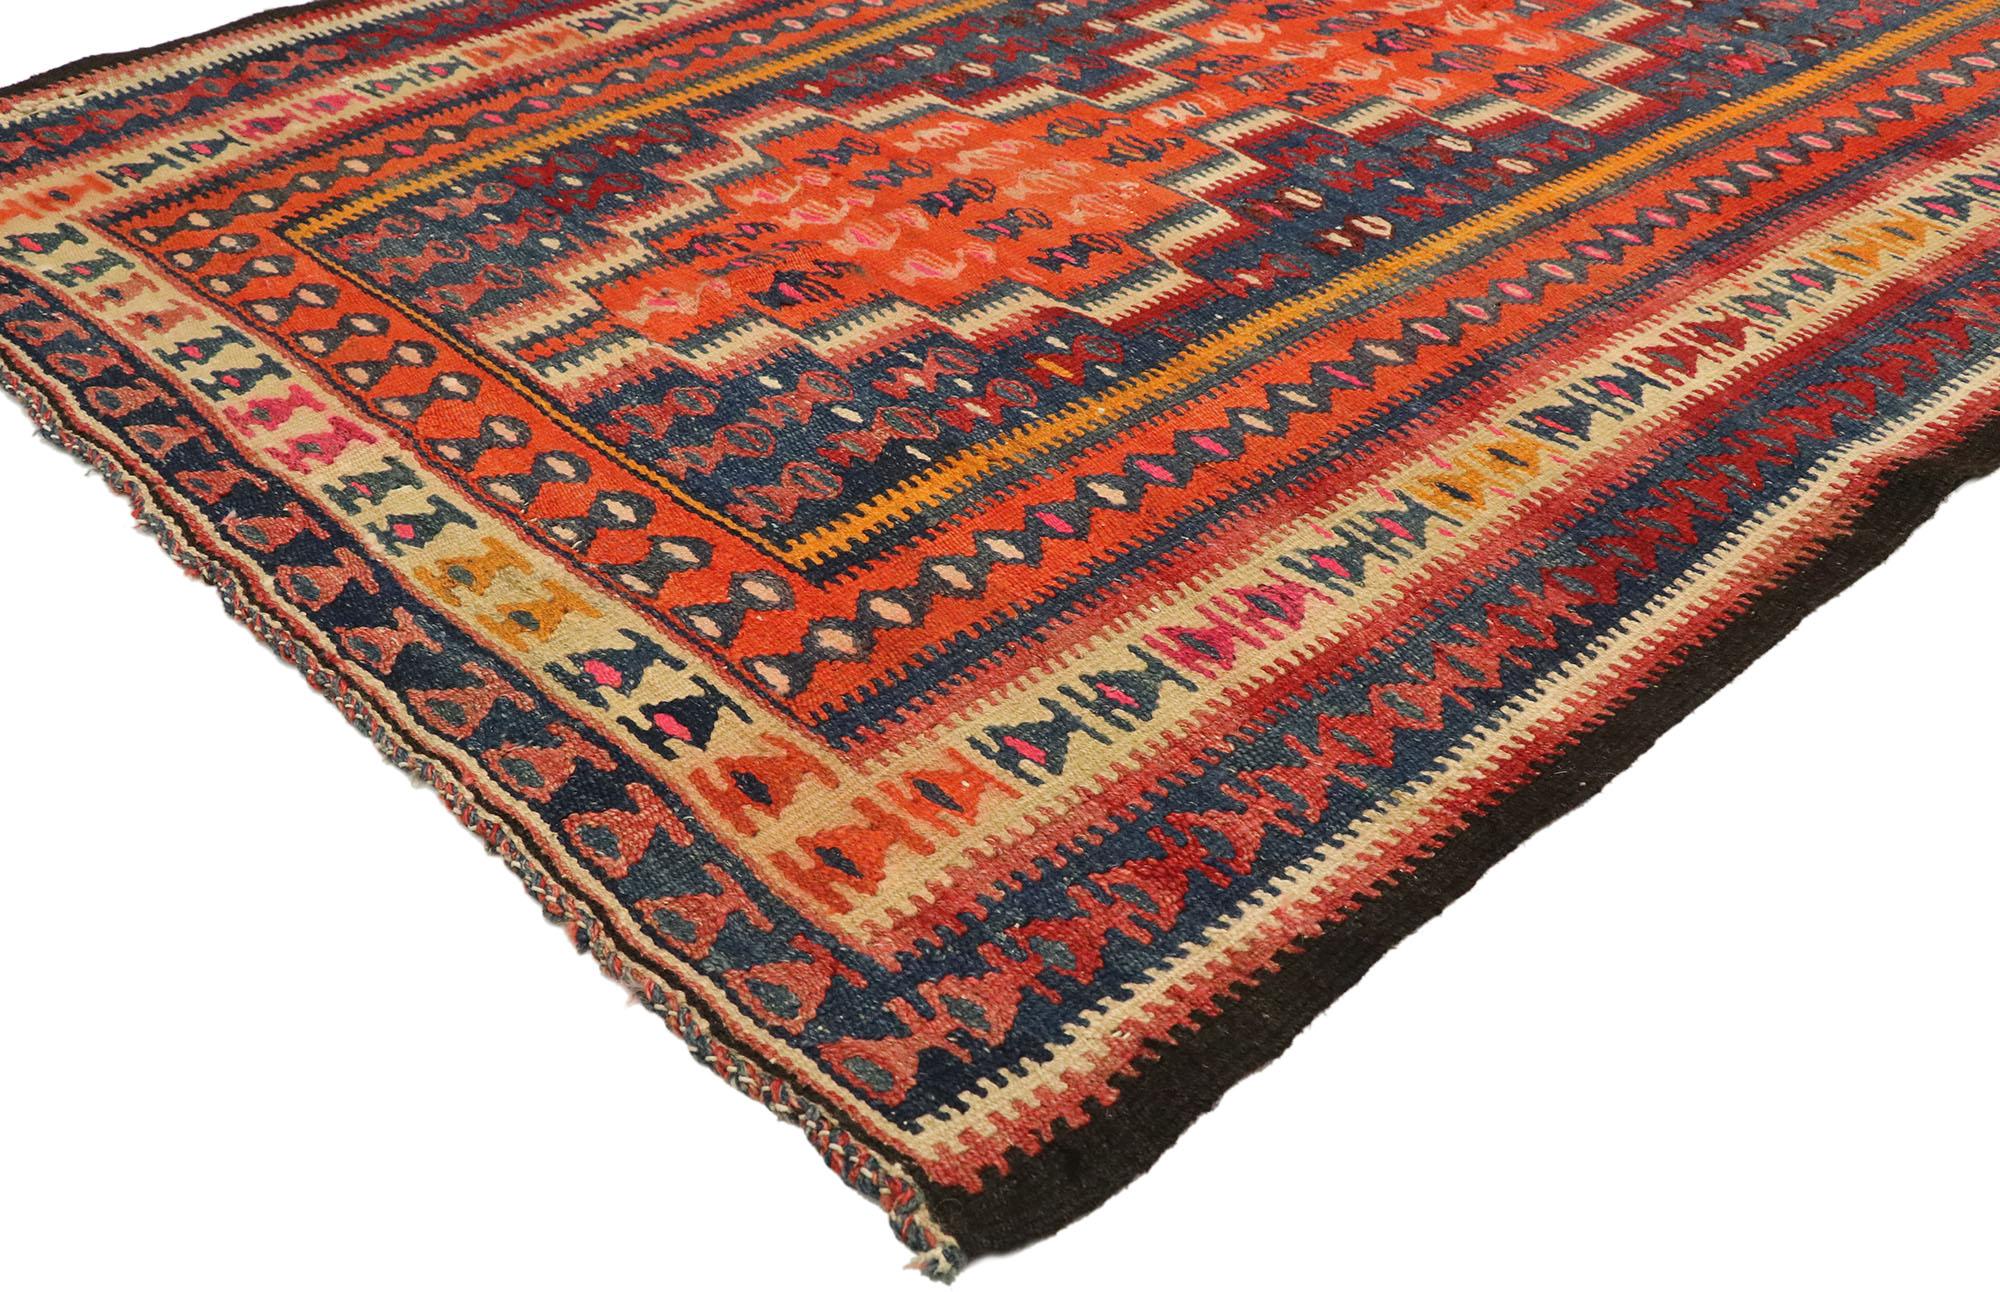 70468 Türkischer Vintage-Kilim-Teppich, 04'02 x 10'05. Türkische Kelim-Teppiche sind traditionelle, flachgewebte Textilien, die von nomadischen und halbnomadischen Stämmen in der Türkei hergestellt werden. Sie zeichnen sich durch geometrische